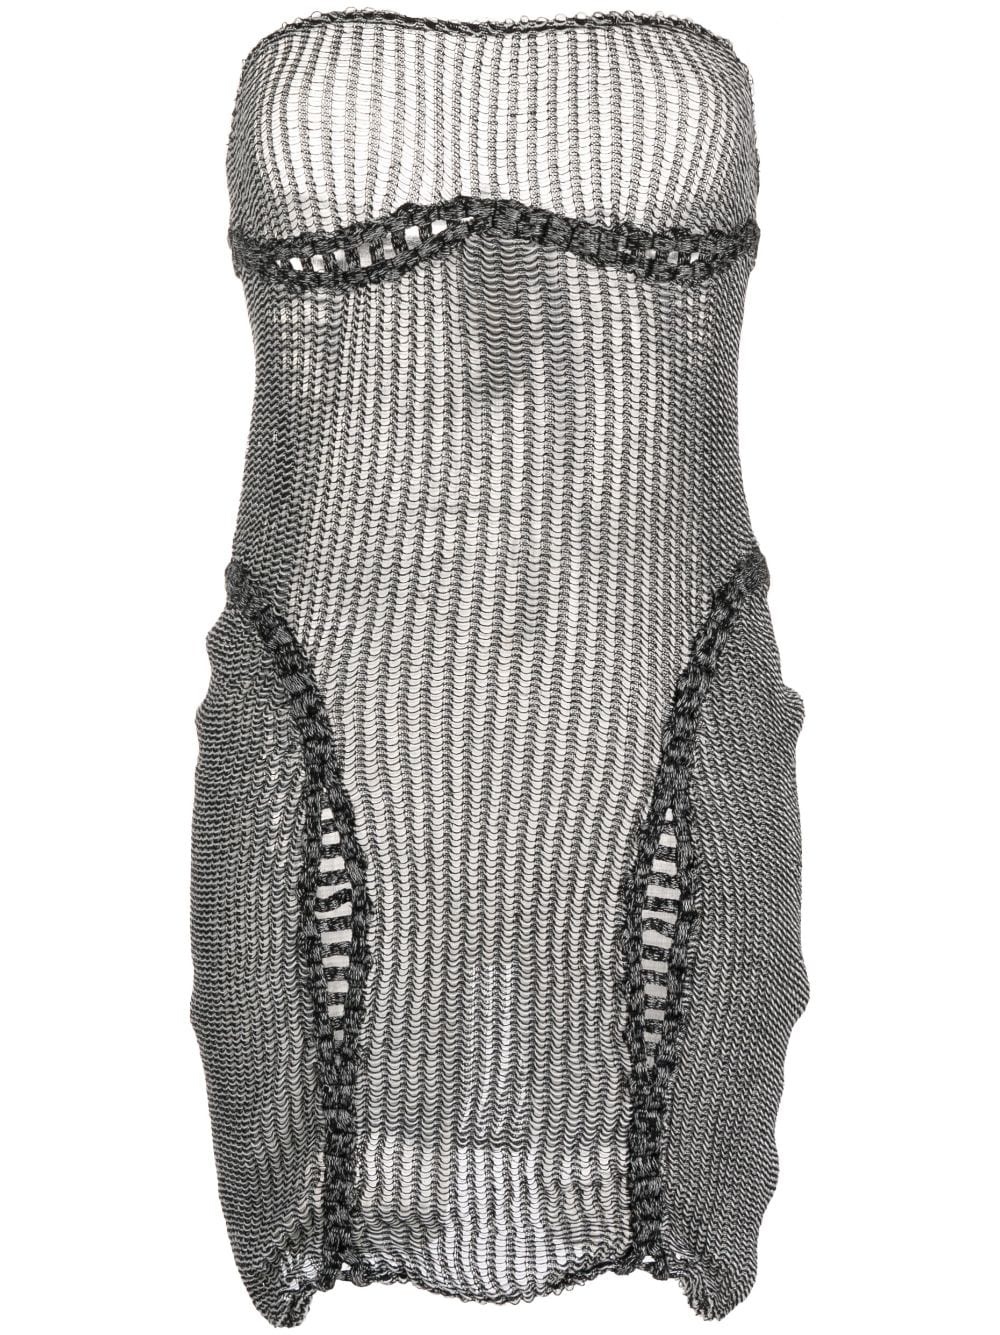 crochet knit dress - 1